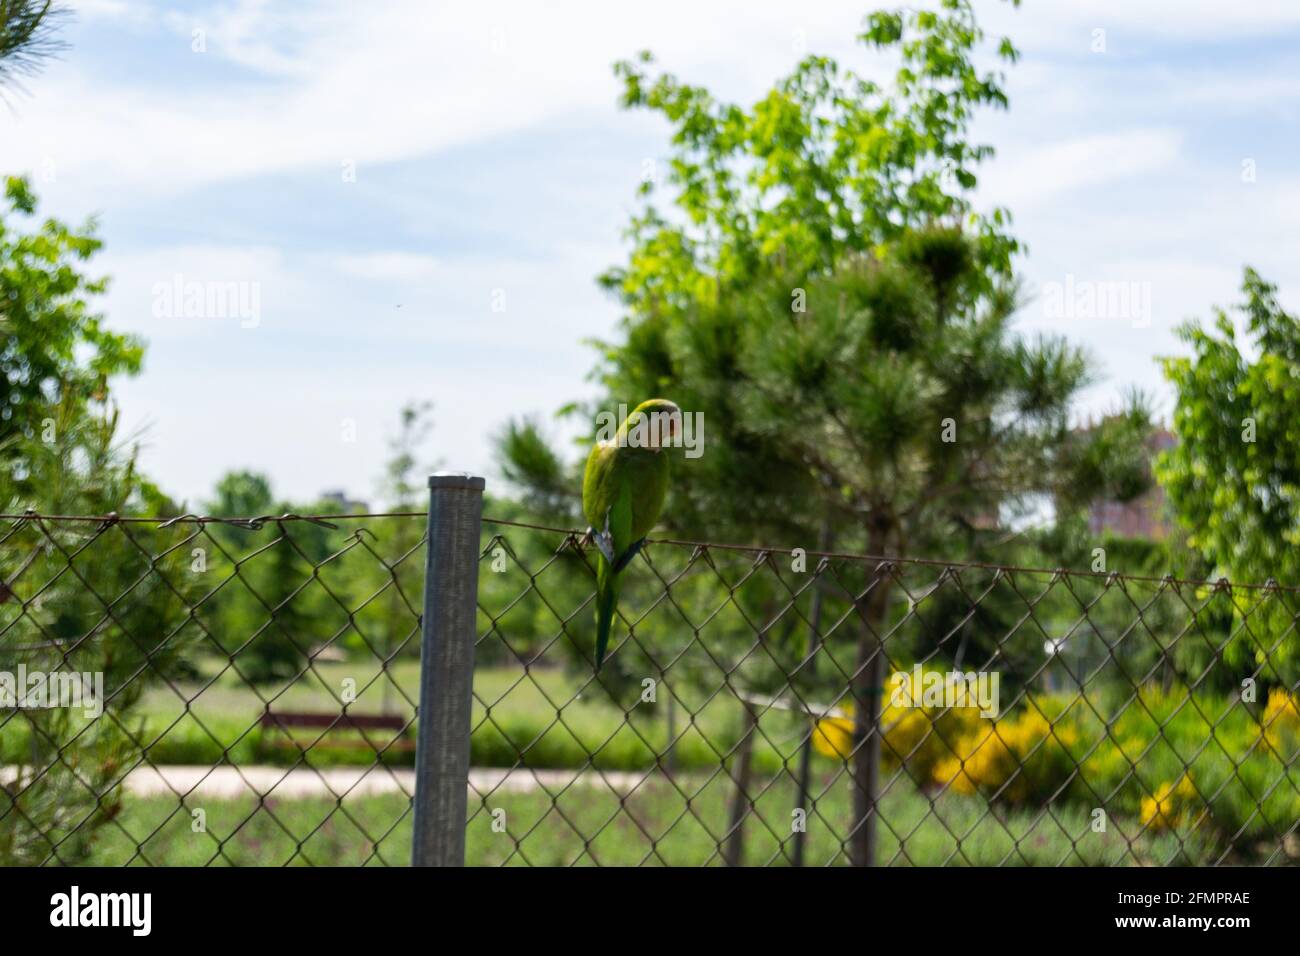 Perroquet vert ou 'Myopsitta monachus' dans un parc de Madrid, Espagne. Photographie horizontale. Banque D'Images